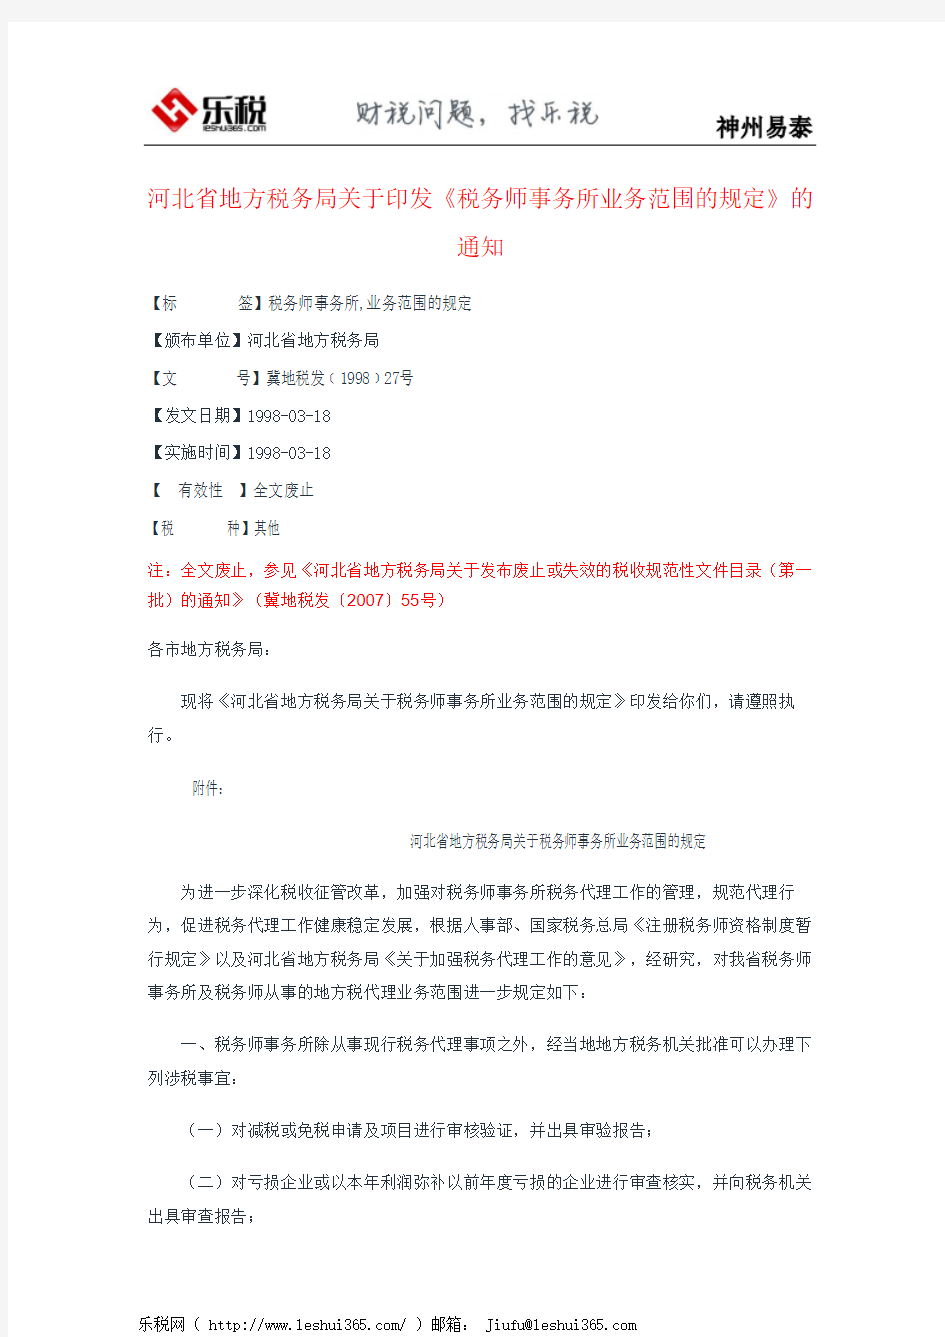 河北省地方税务局关于印发《税务师事务所业务范围的规定》的通知